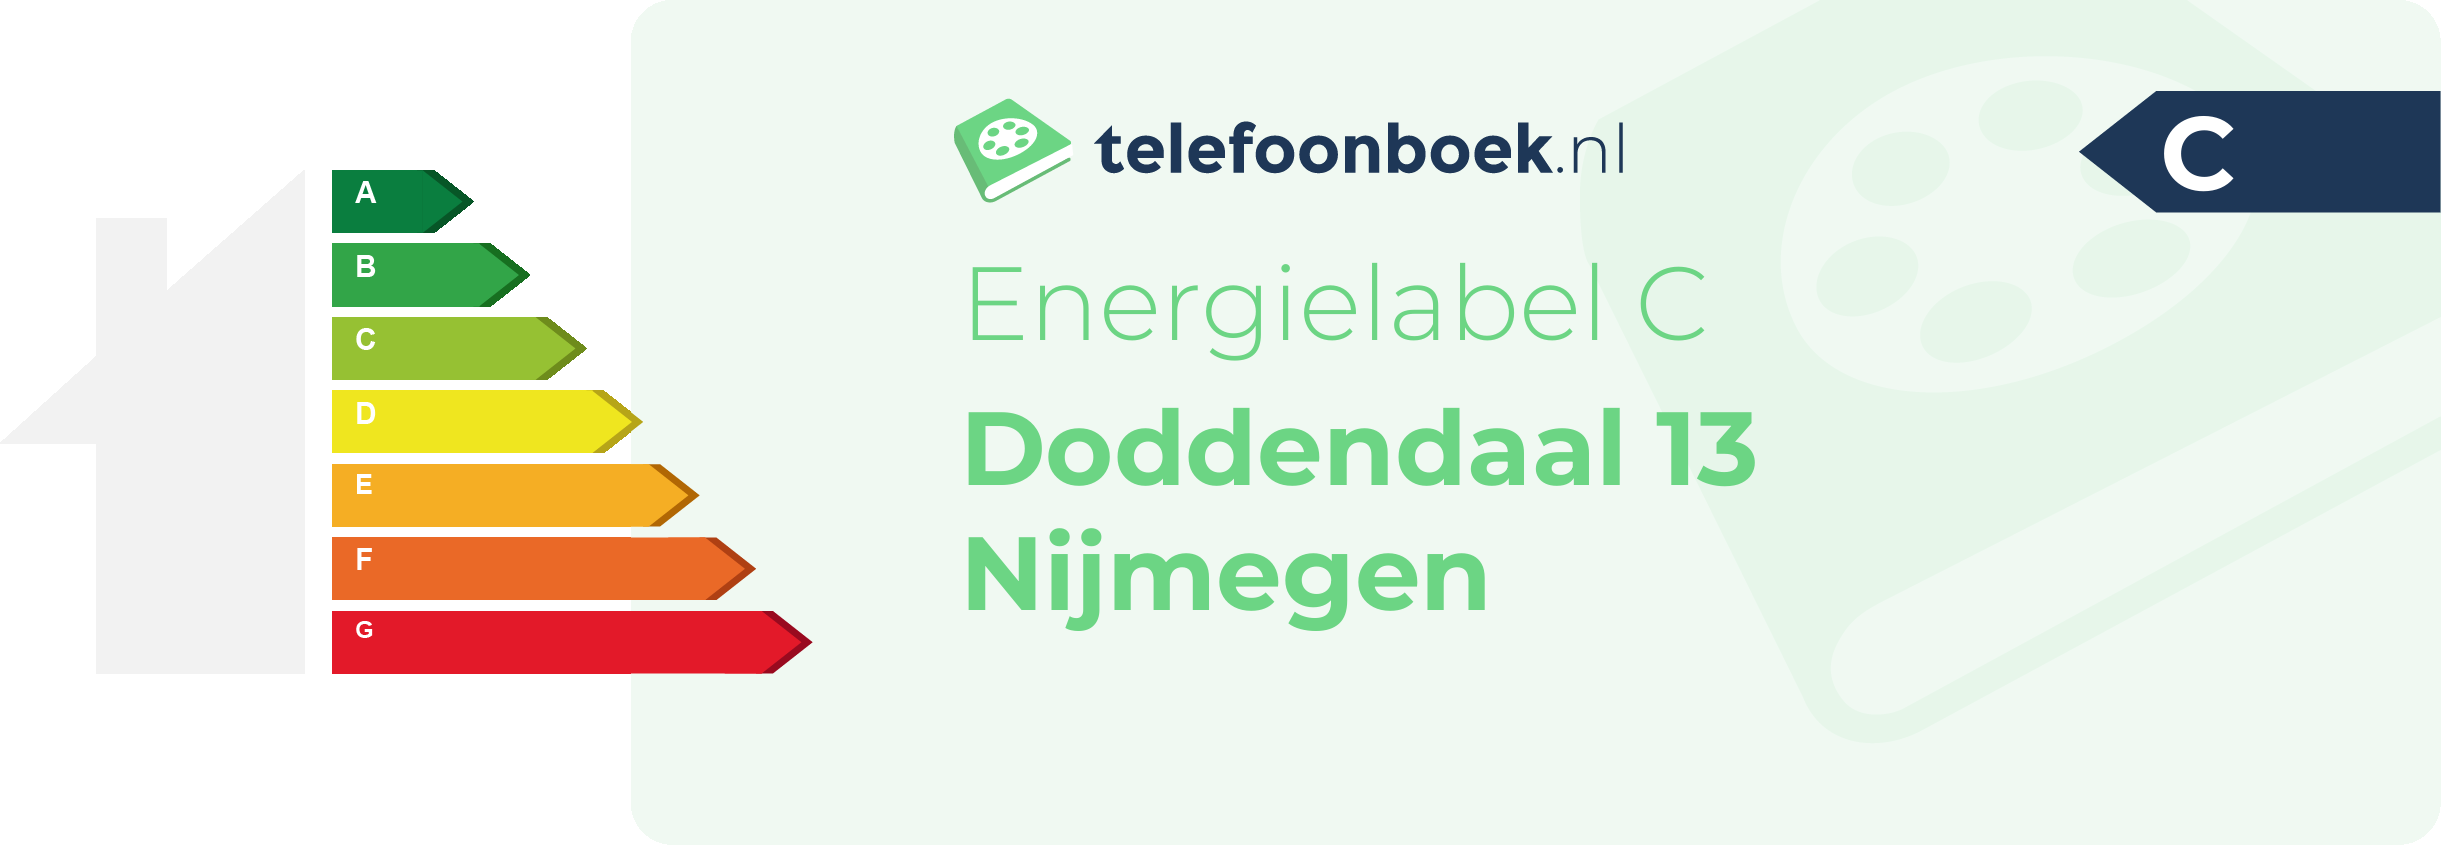 Energielabel Doddendaal 13 Nijmegen